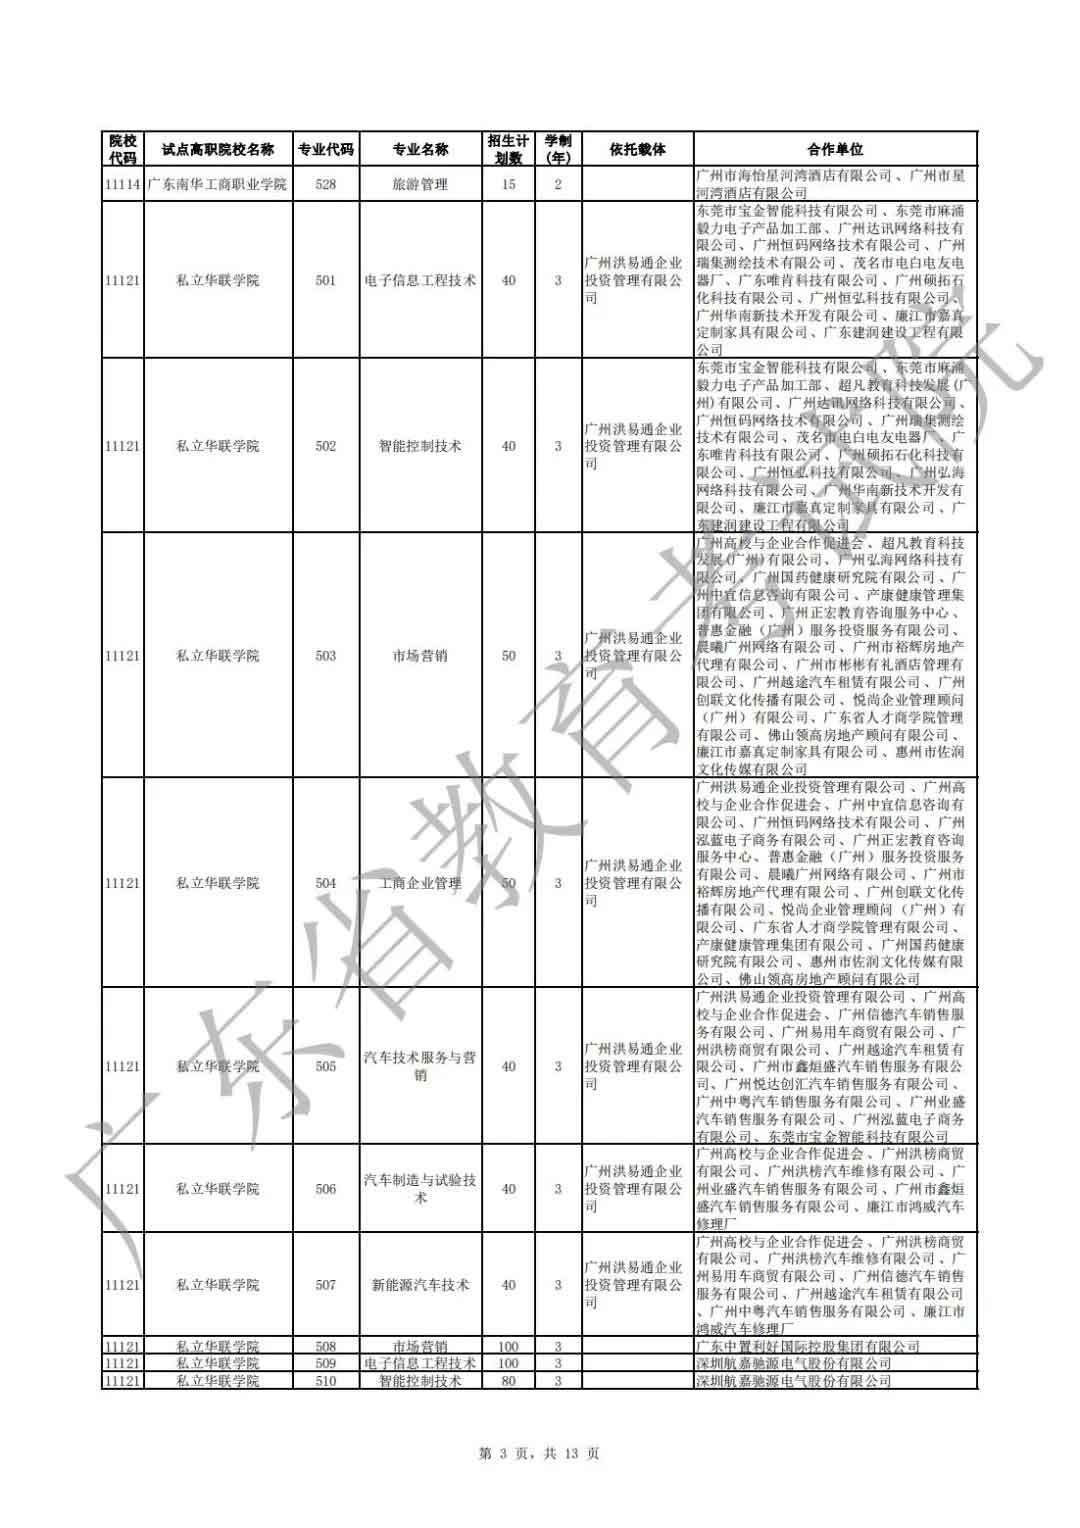 广东省2021年高职扩招专项行动现代学徒制试点招生院校专业公布(图3)